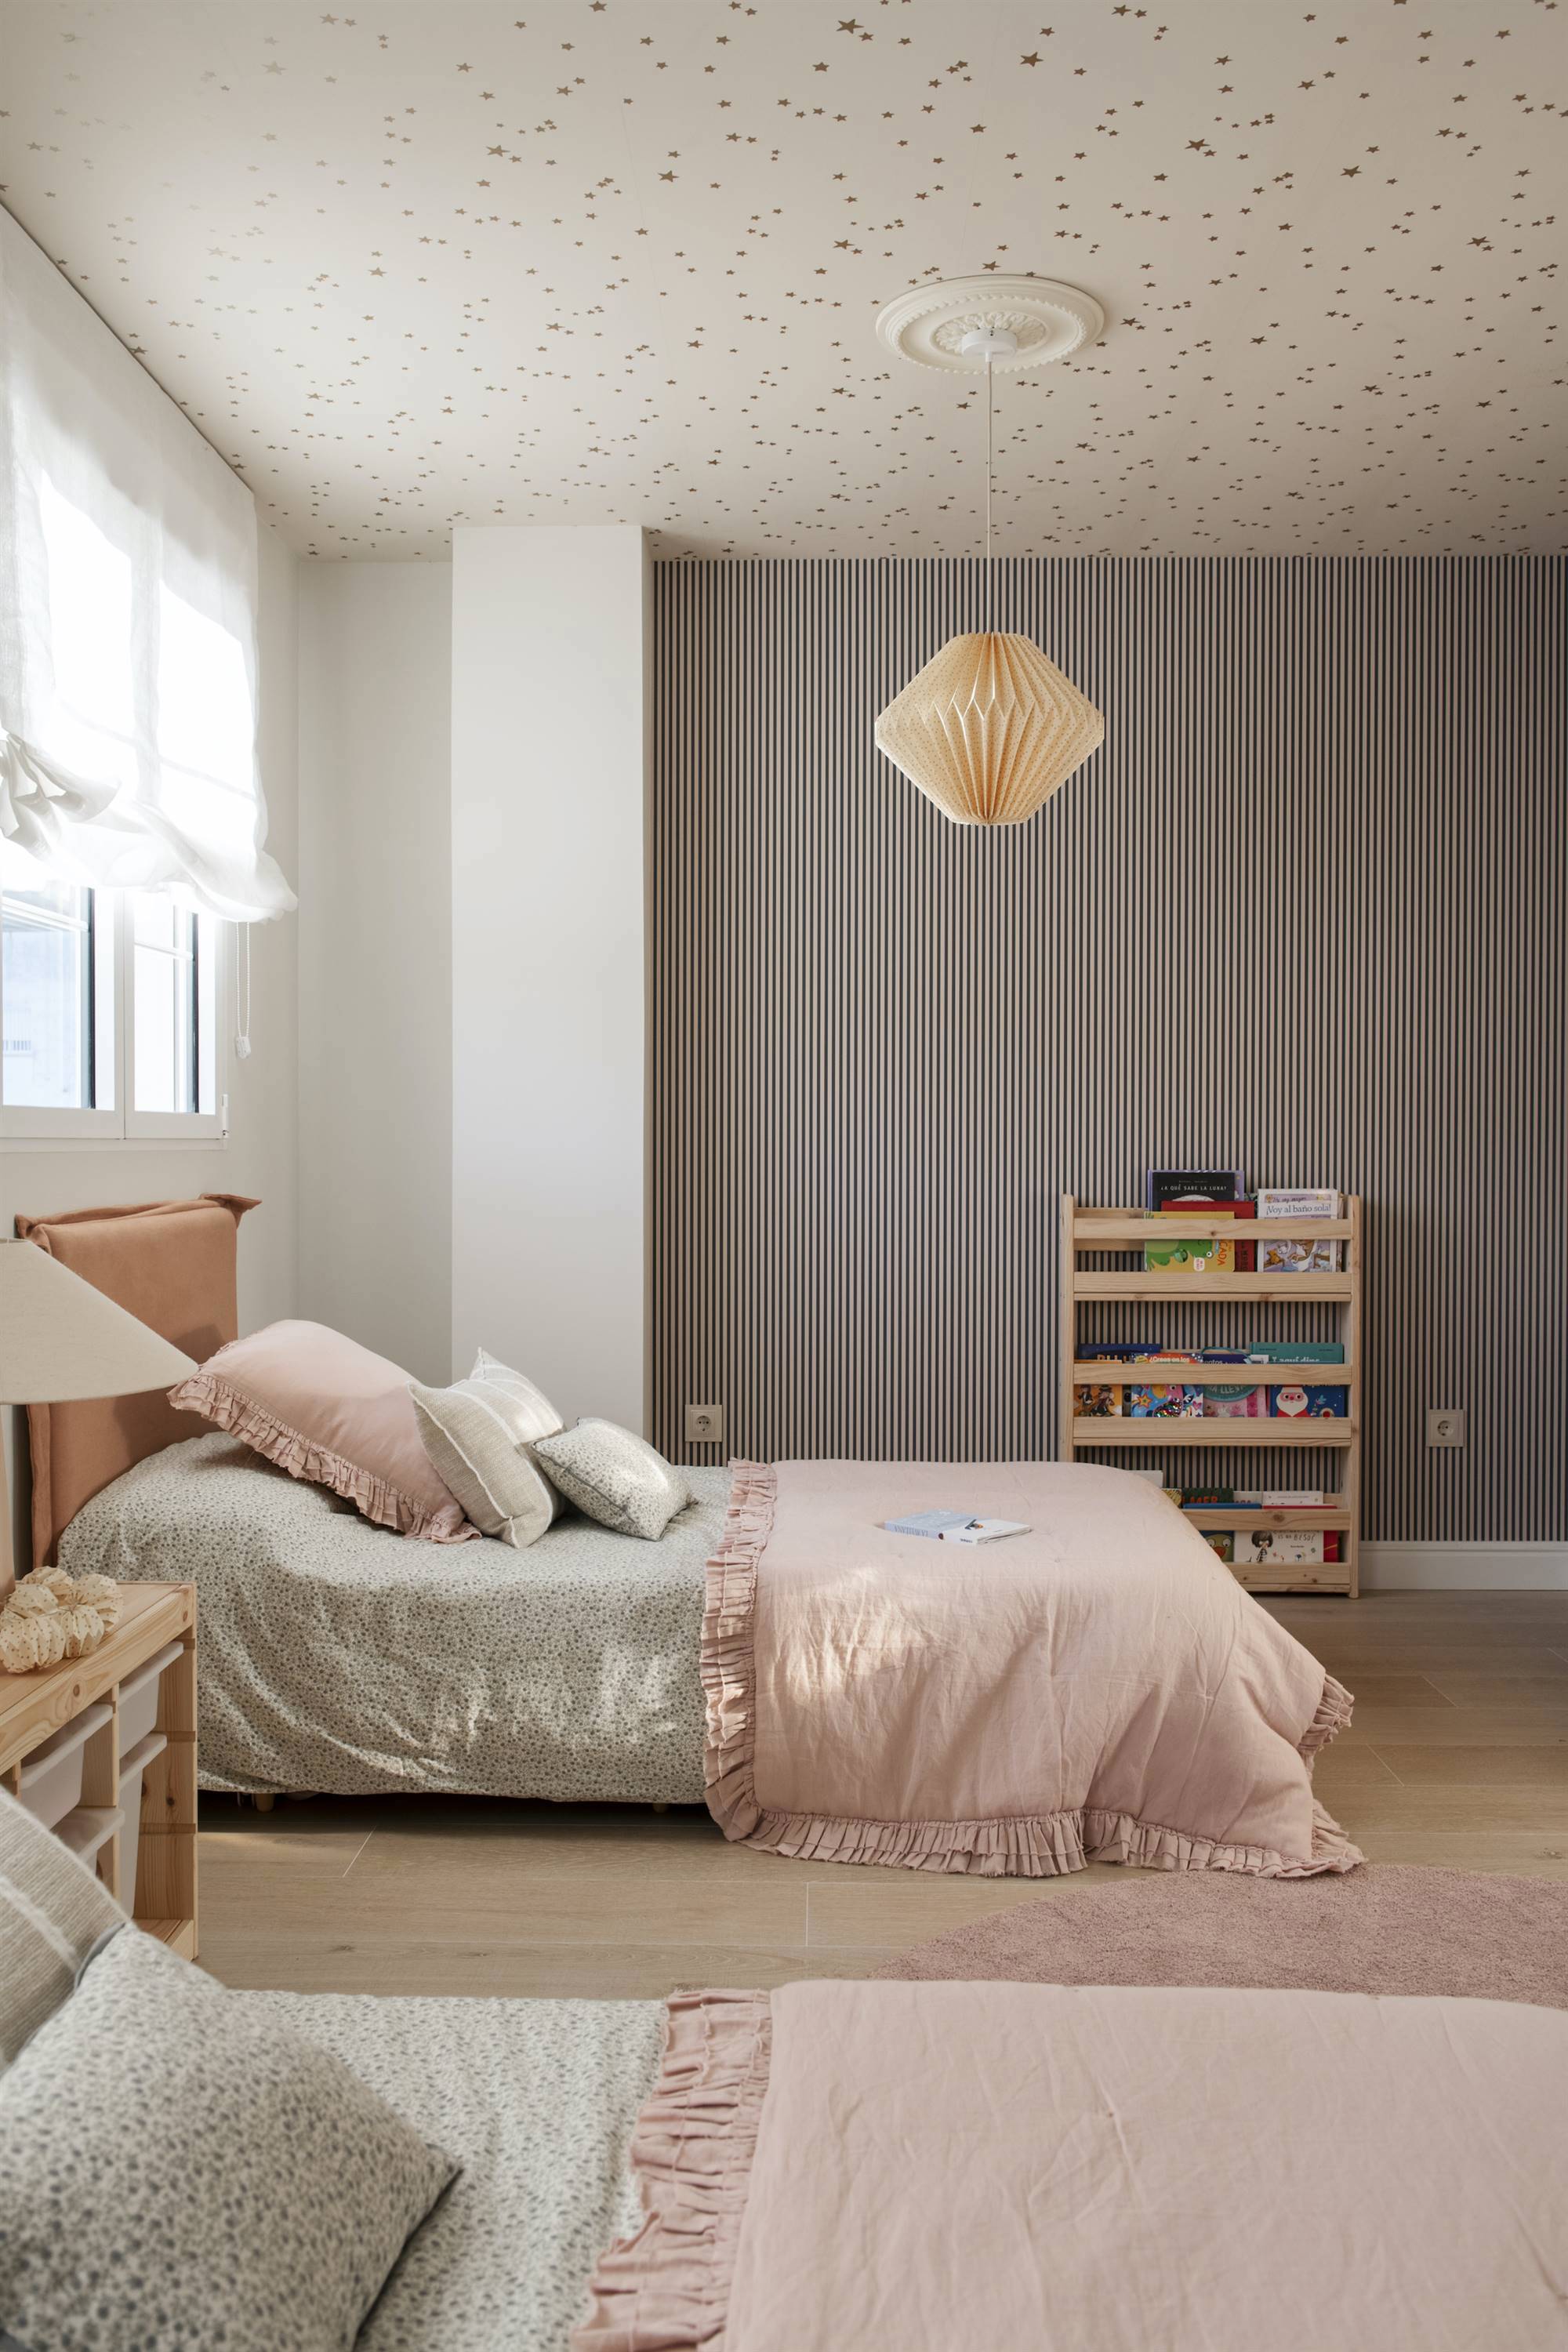 Dormitorio infantil con papel pintado en pared y techo.